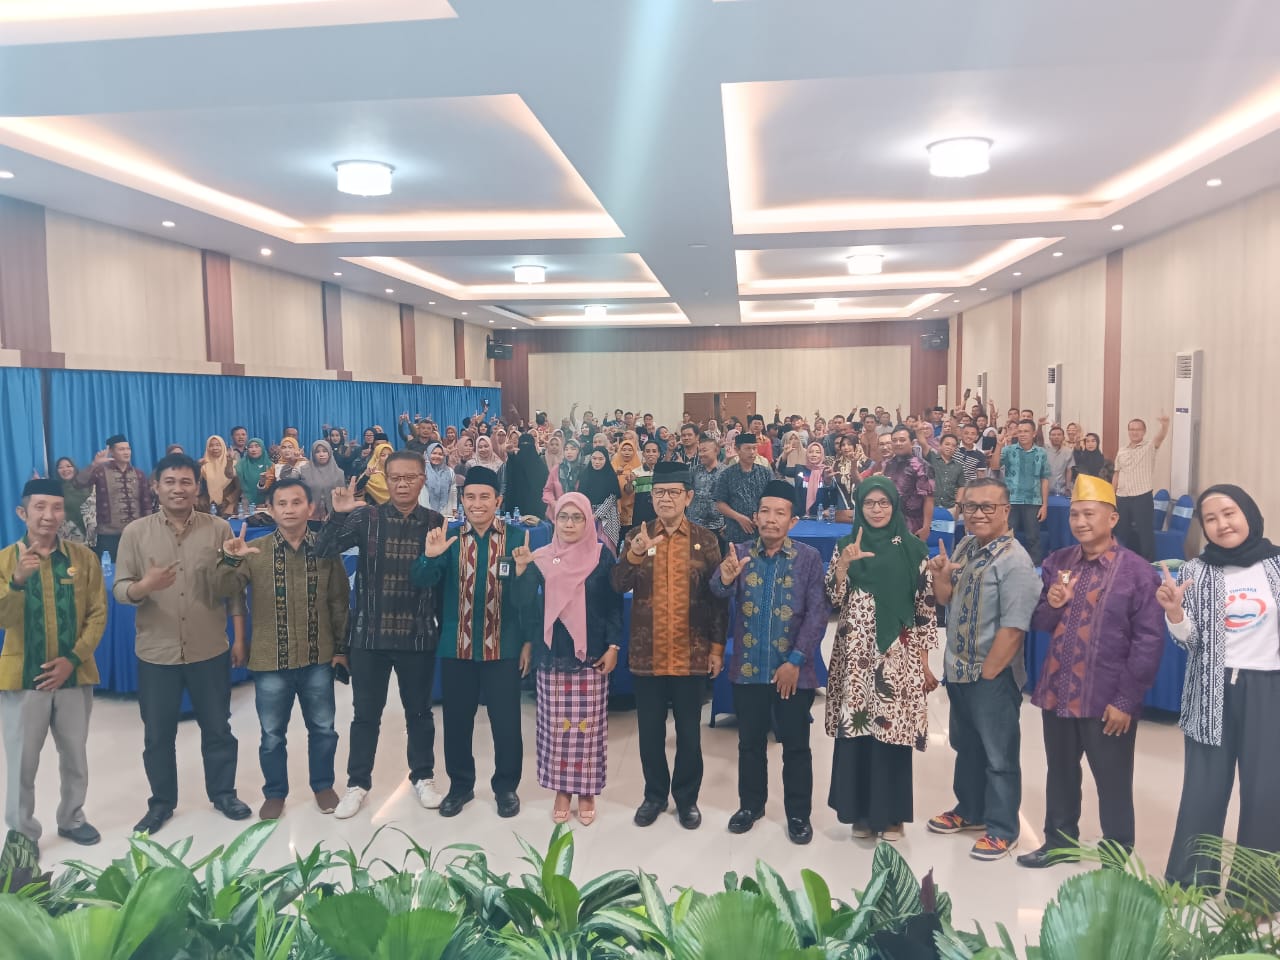 Kantor Bahasa Sulawesi Tenggara Gelar Peningkatan Kapasitas Mengajar Bahasa Tolaki Bagi Guru Utama